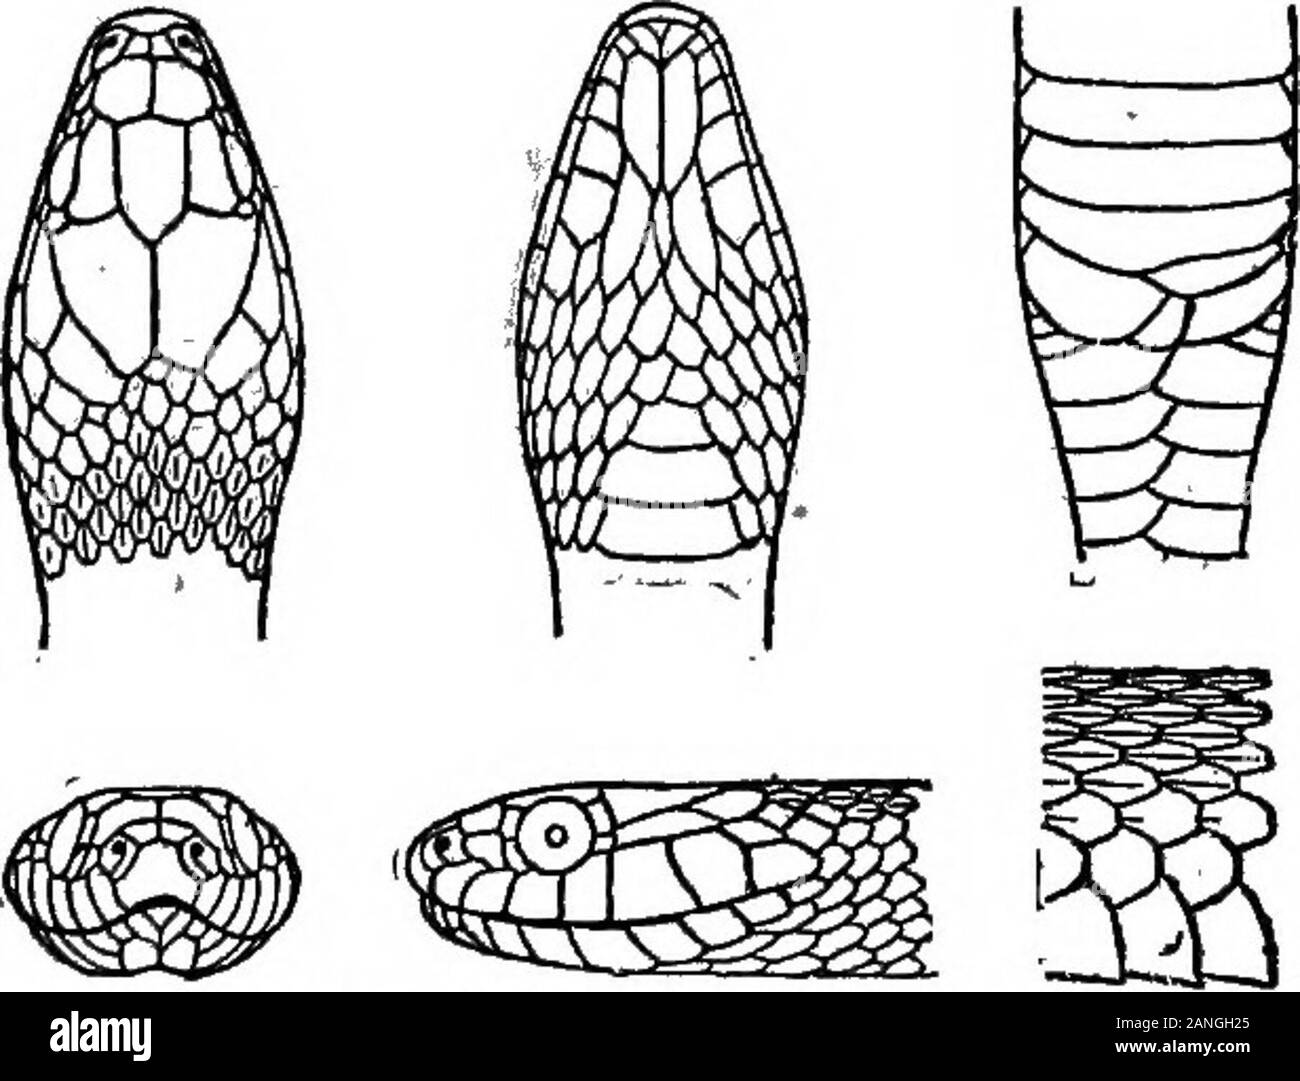 Catalogue de New York reptiles et batraciens . RCE pour l'contortrix copperhead (Ancistrodon)(p. 385) est beaucoup moins proche. L'un de nos plus grands, plus beaux et plus abondants serpents.Mearns. 98, p. 326 abondante dans tous les comtés du sud-est de New York.J'^ckel. 1901, p. 152 abondants près de Ithaca, fréquent à Hornellsville. Eeed. 1901 souvent vu le long des rives de la Hackensack et autres streamsin Rockland County, mais pas si commun que le serpent noir. Wal-dentelle. 190113 Natrix rigida (dis)Stiff ( snaJceI De Kay. Tropidonotus rigidus Jordanie. RigidaScales carinated Regina, en 19 lignes. Museau court. U Banque D'Images